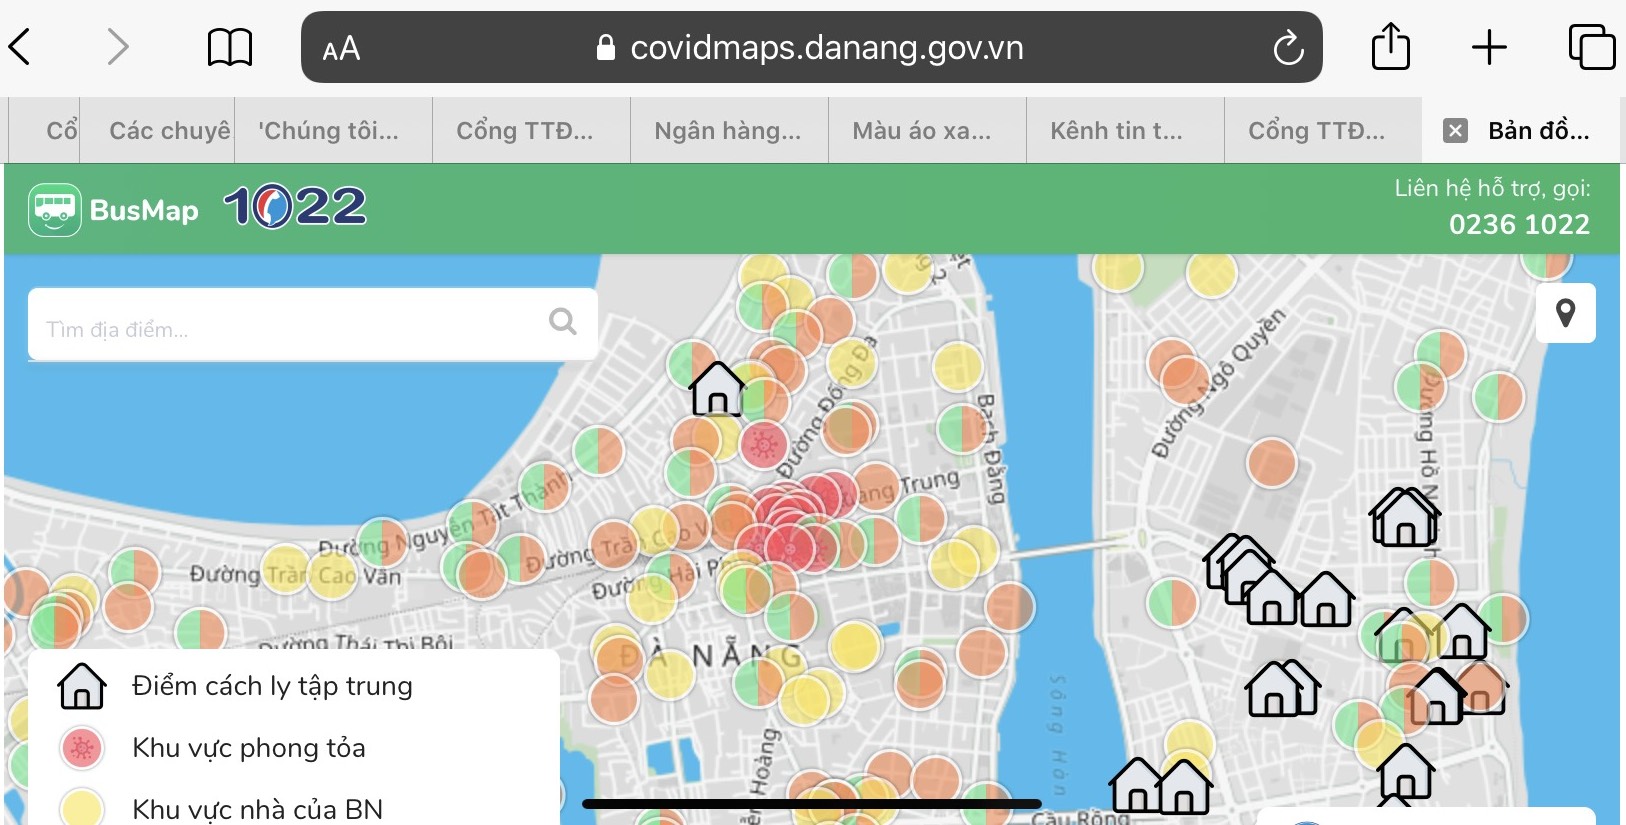 Bản đồ thông tin dịch tễ Đà Nẵng năm 2024 cung cấp một cái nhìn tổng quan về tình hình dịch bệnh trên địa bàn thành phố. Nó giúp bạn đánh giá đúng tình hình và đưa ra các biện pháp phòng chống dịch hiệu quả nhất, giúp mọi người an toàn hơn.